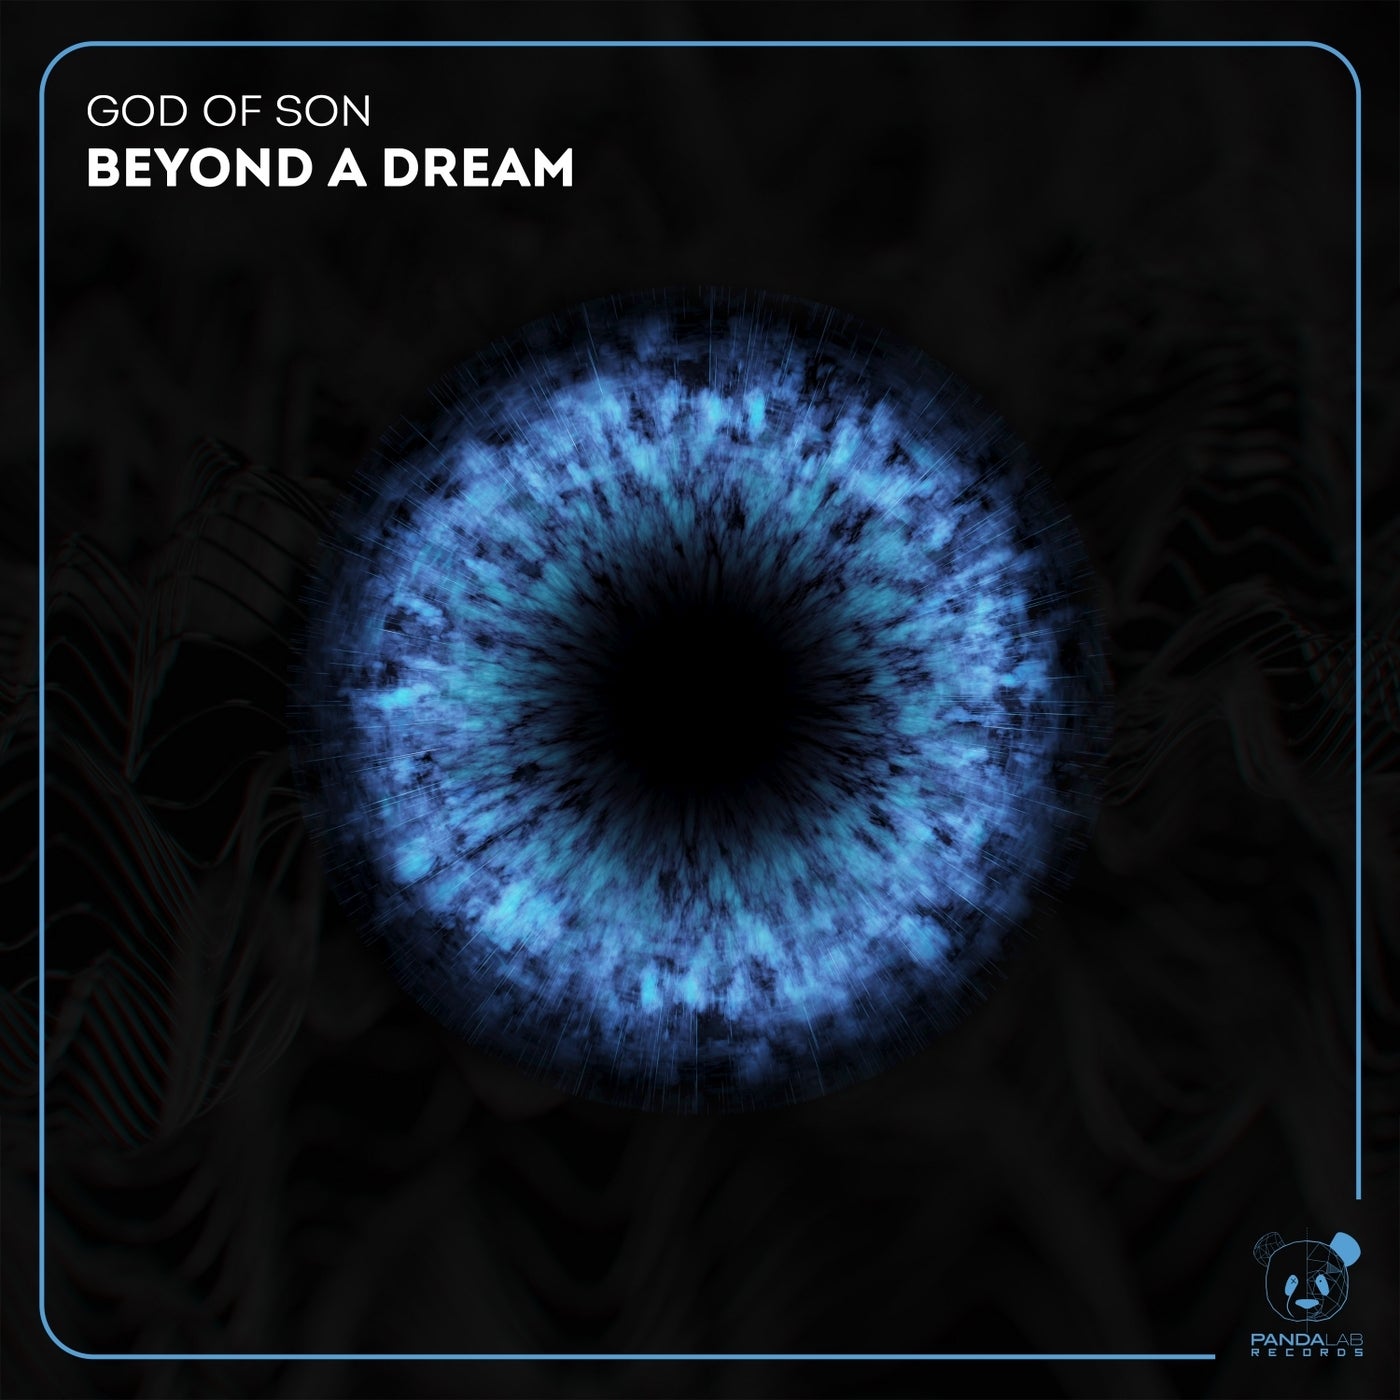 Beyond a Dream